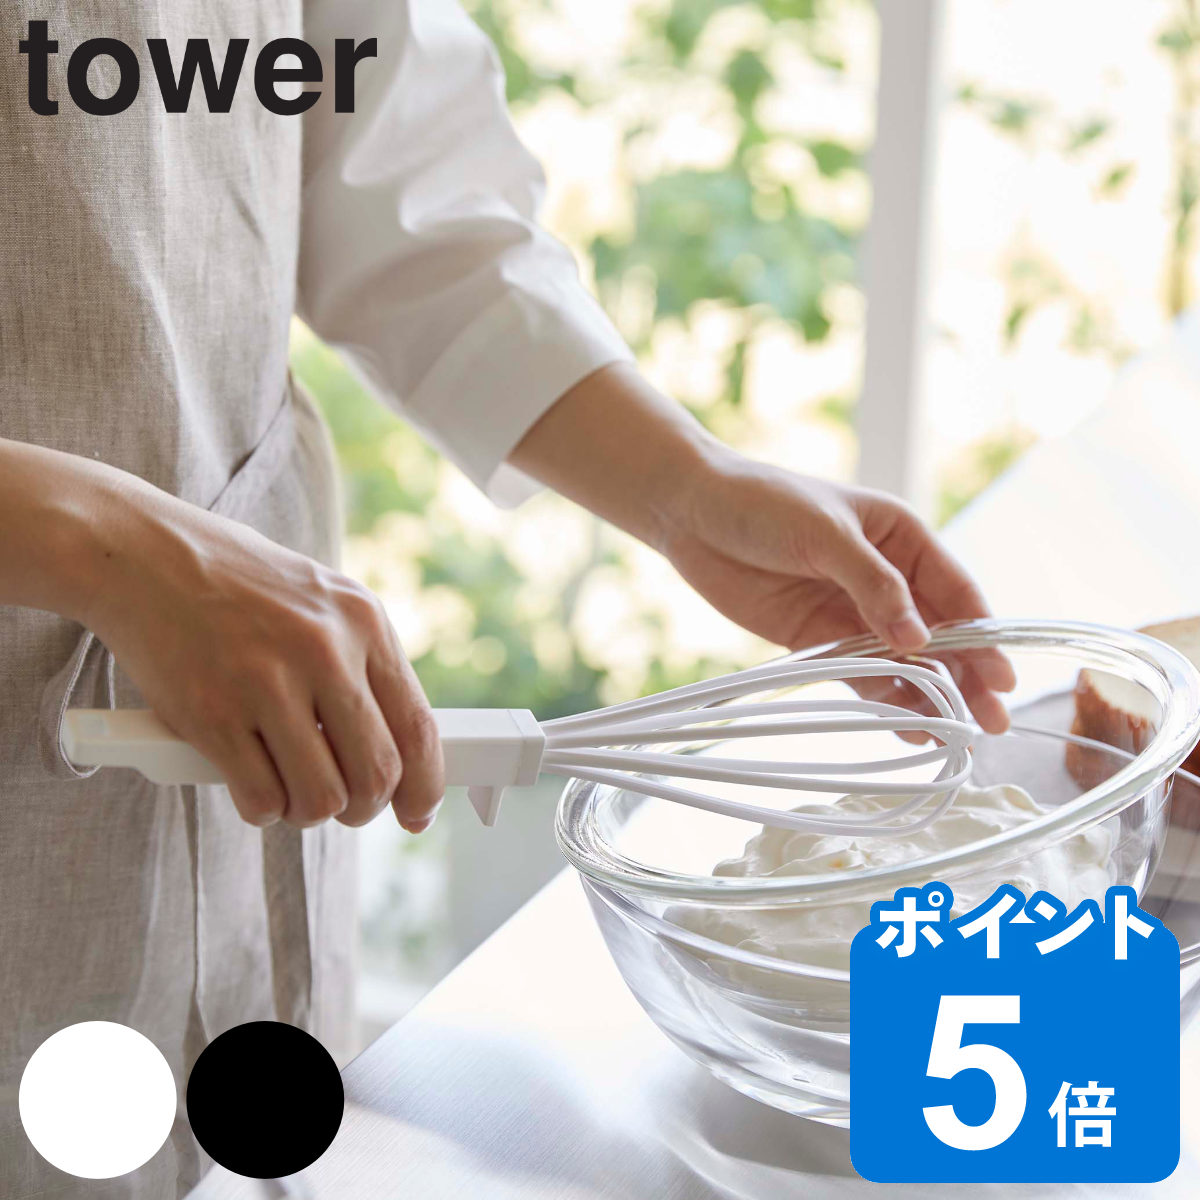 山崎実業 tower シリコーンハンドル 泡立て器 タワー